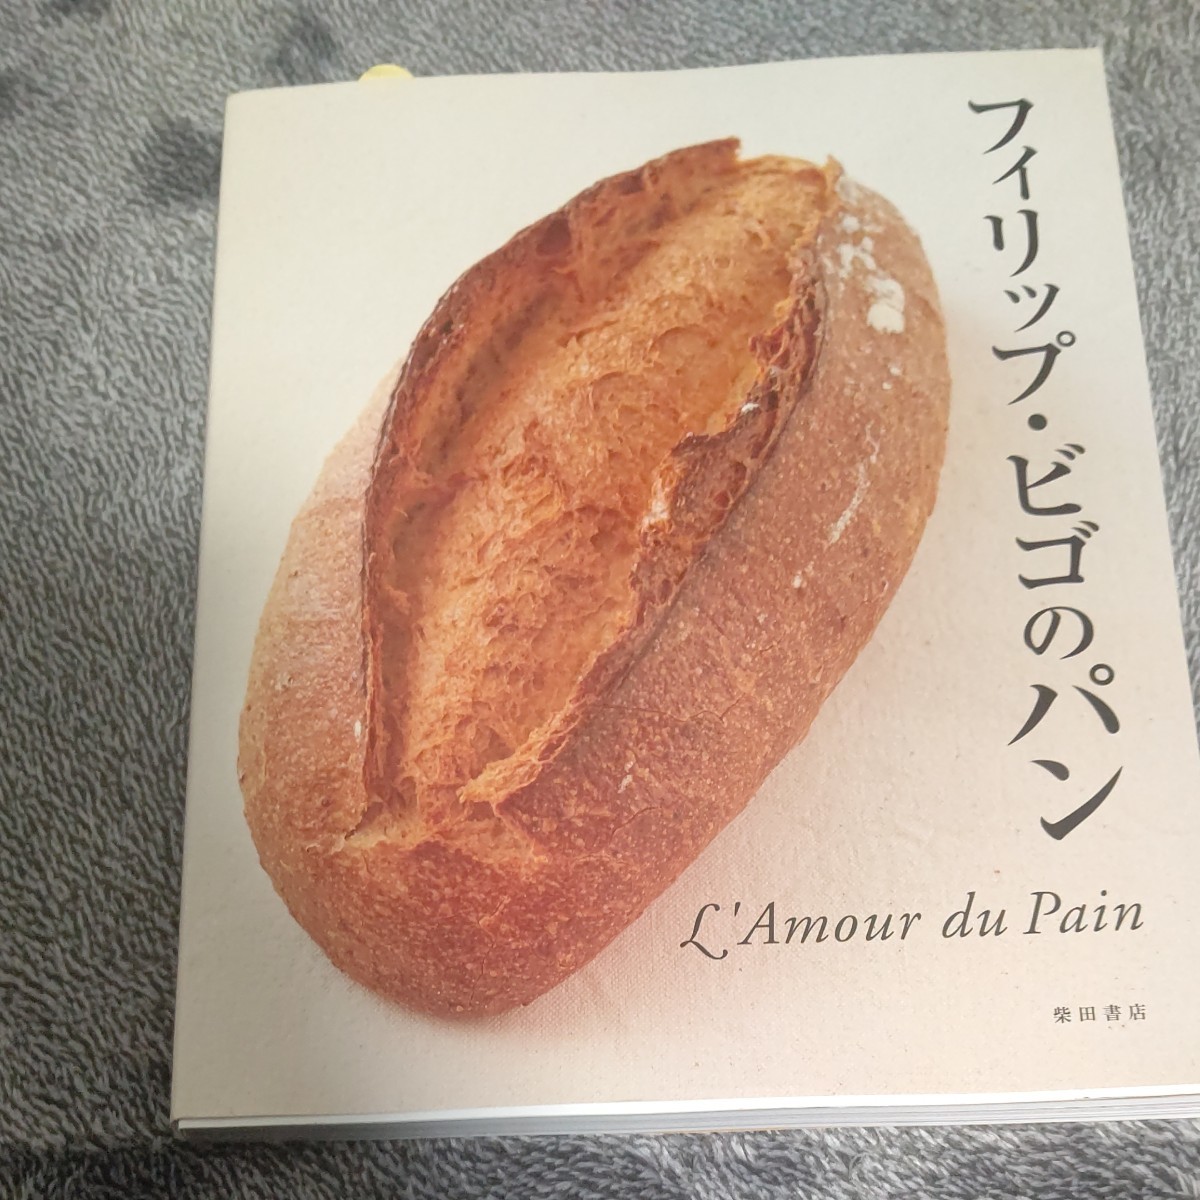 フィリップ ビゴのパン : du l'amour pain 2021セール :